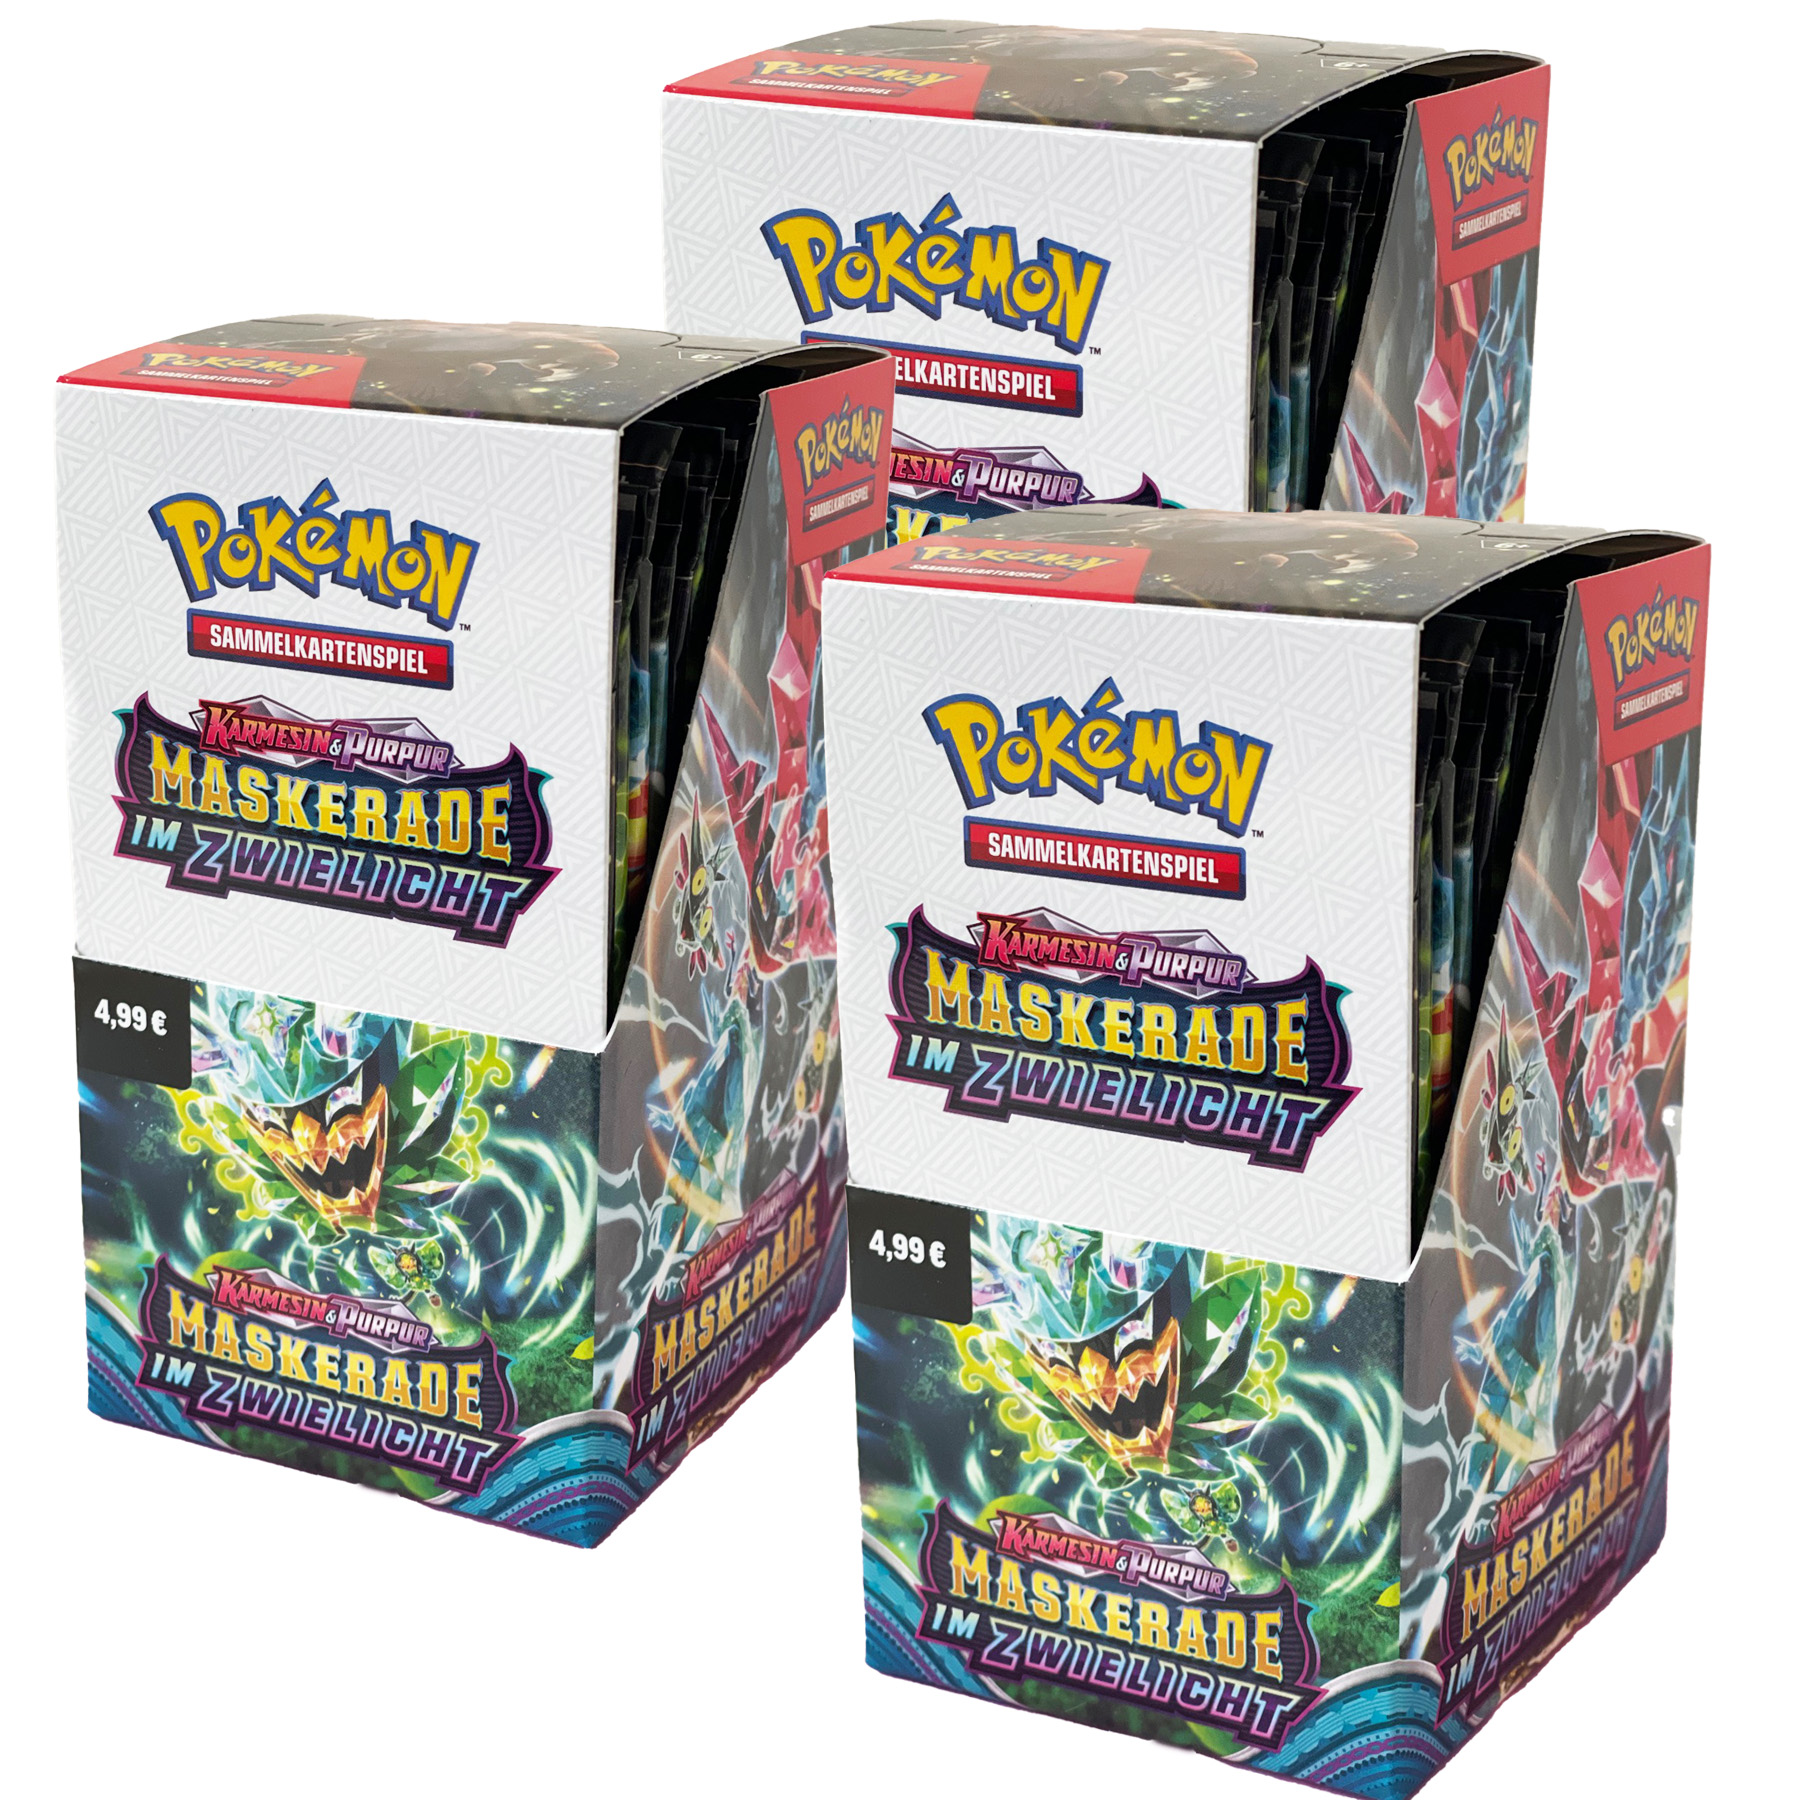 Pokémon "Maskerade im Zwielicht" - 3 Displays mit je 18 Boosterpacks